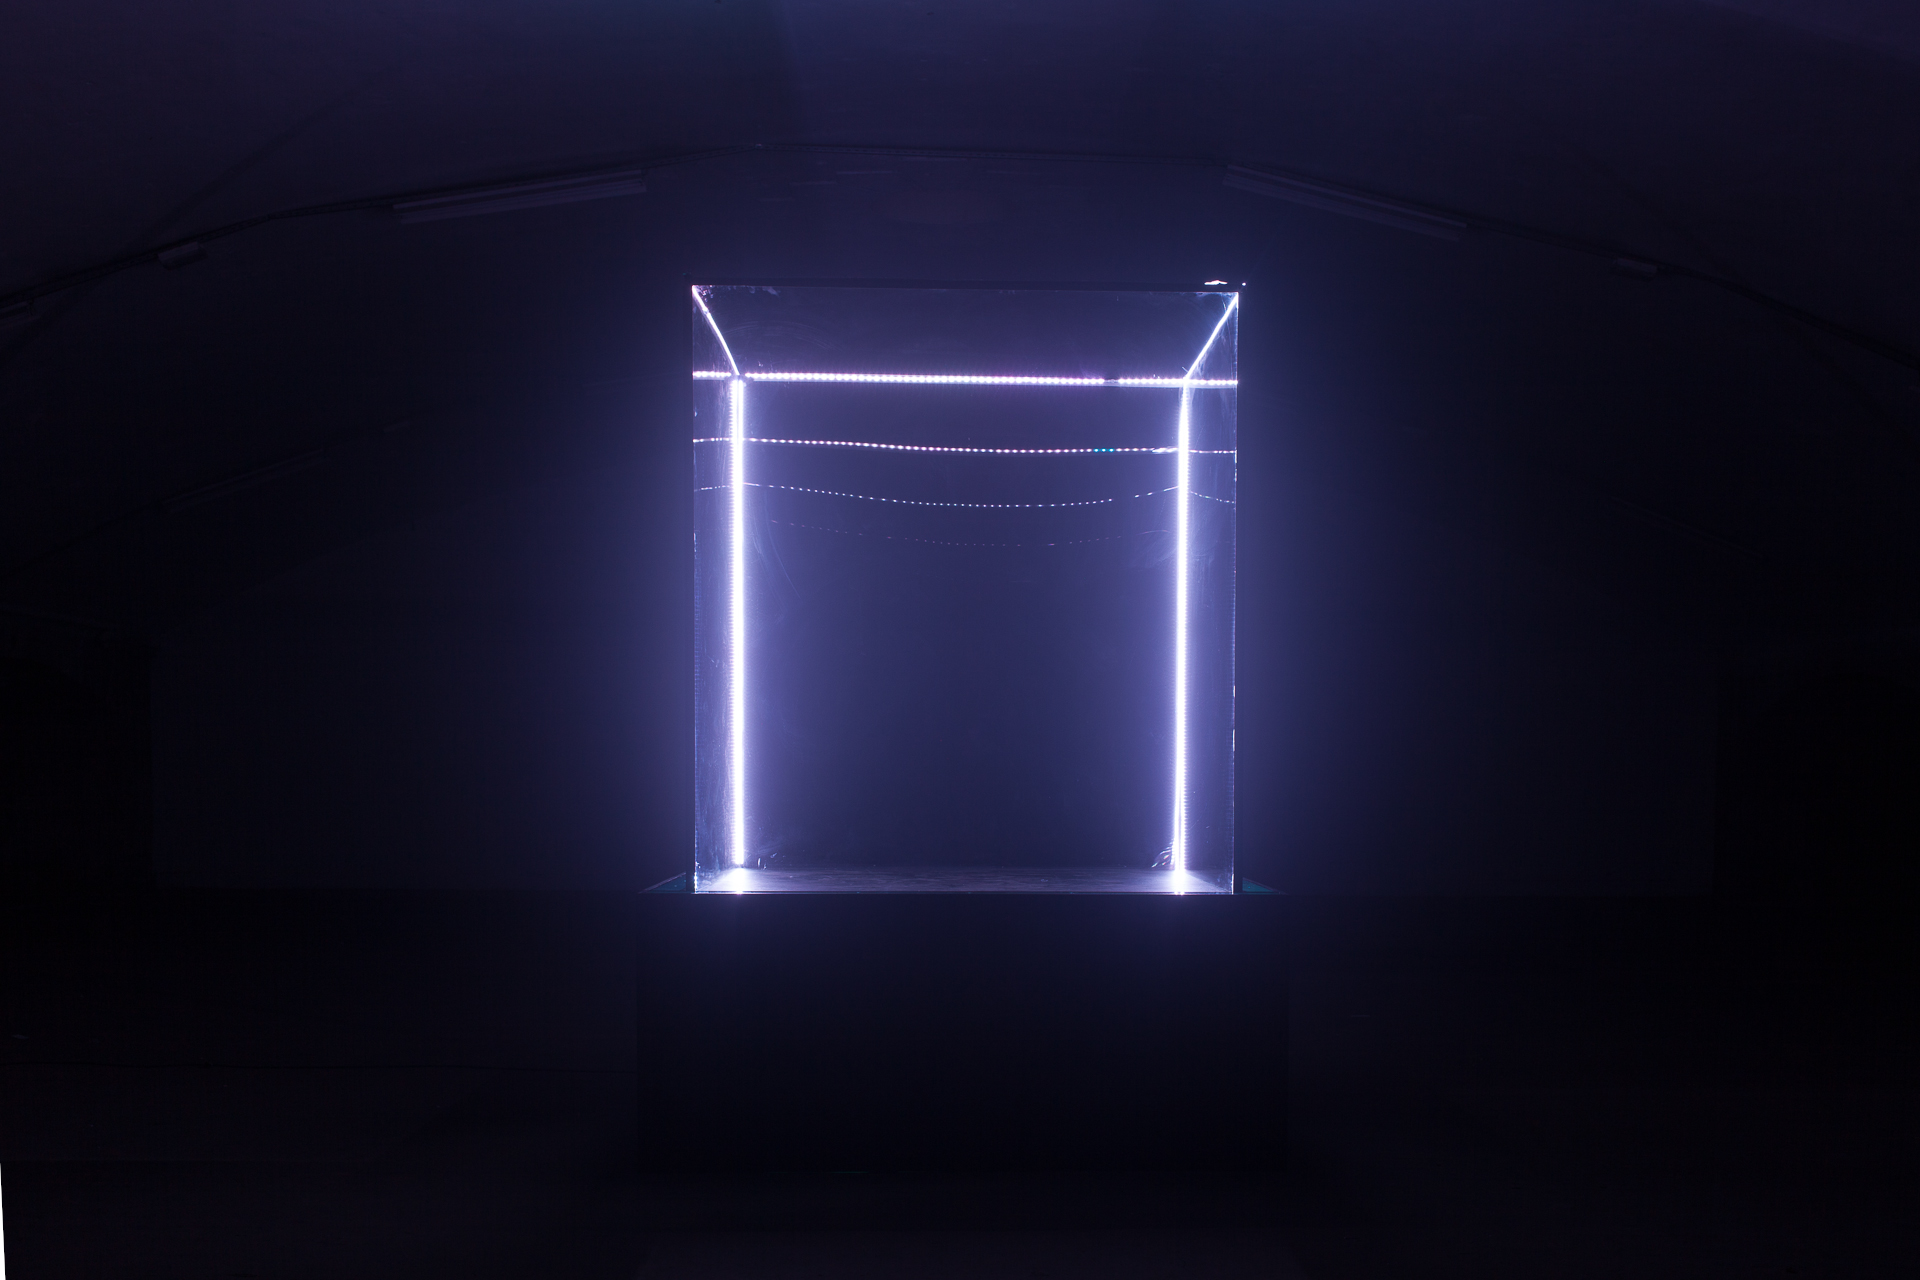 Trois cubes interactifs seront installés lors de la soirée "Live In The Cube"